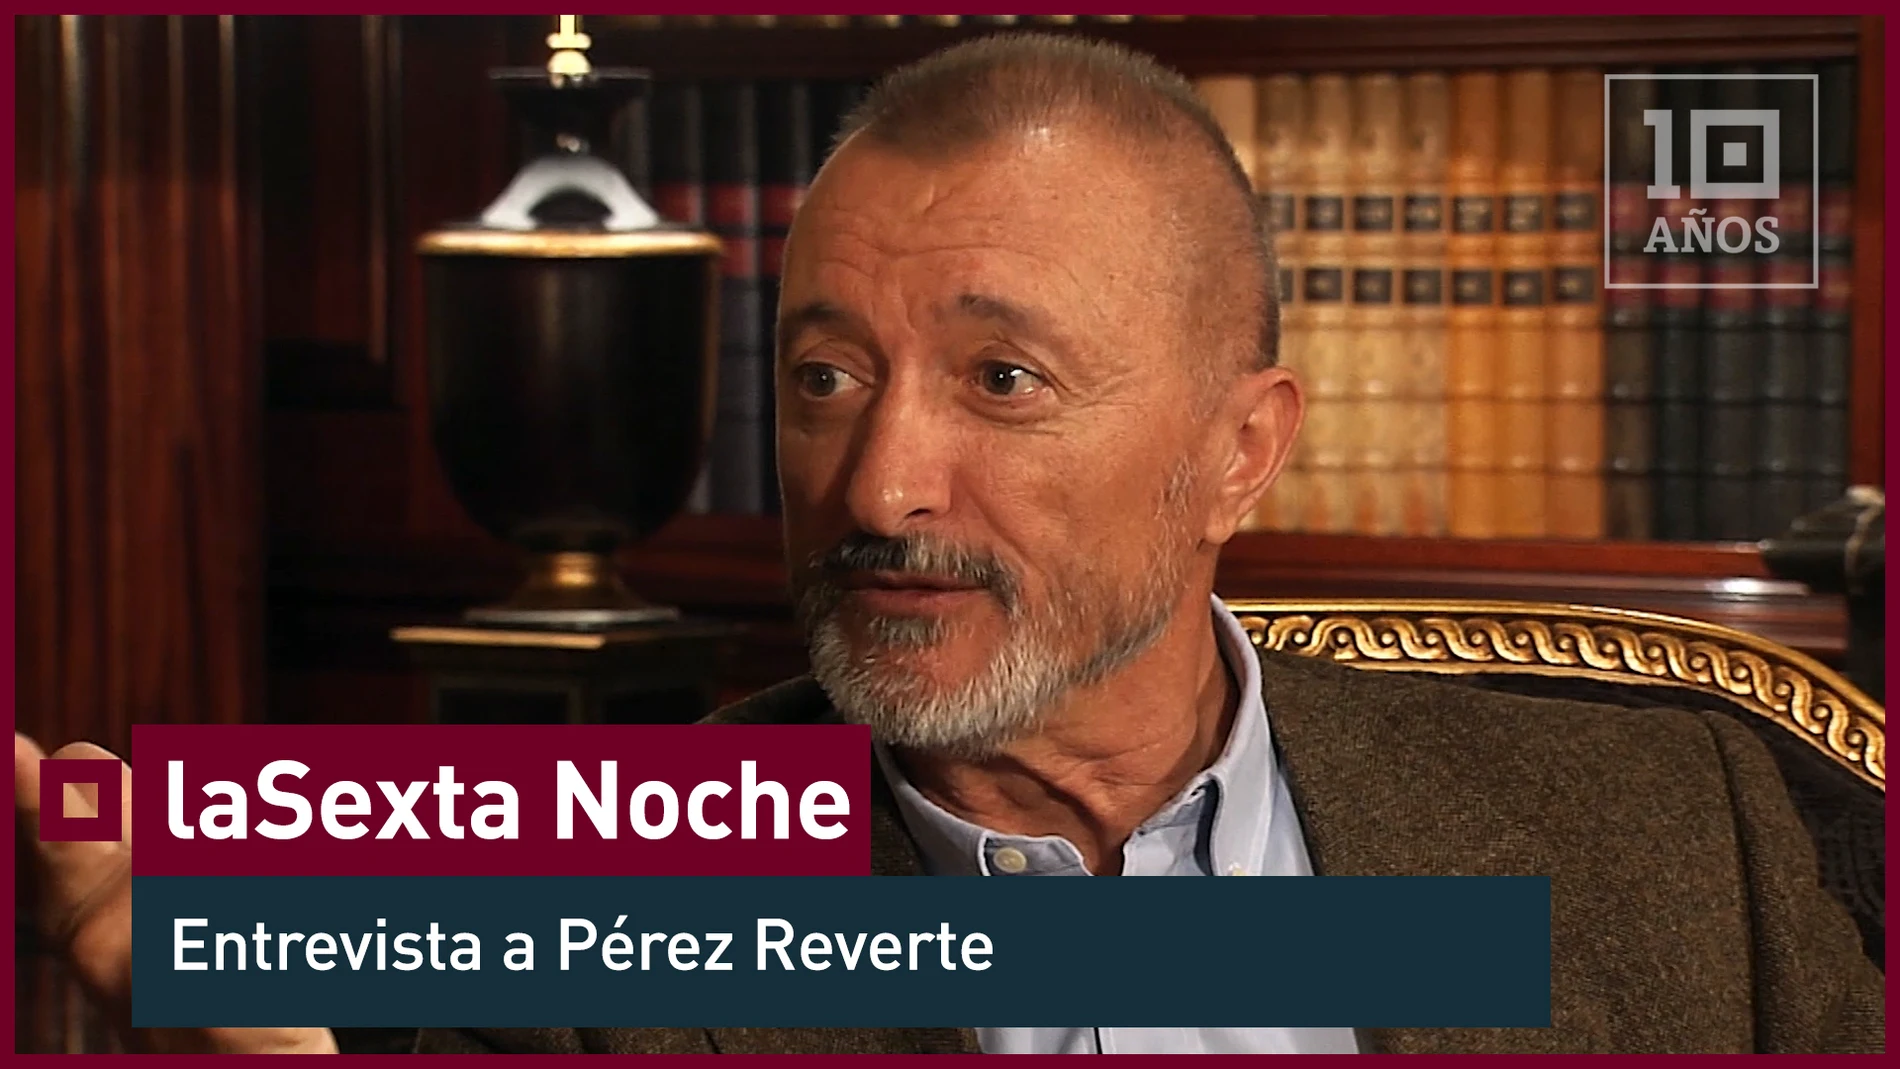 Arturo Pérez Reverte: "Me he hecho enemigos mortales por opinar libremente" - laSexta Noche - laSexta 15º aniversario